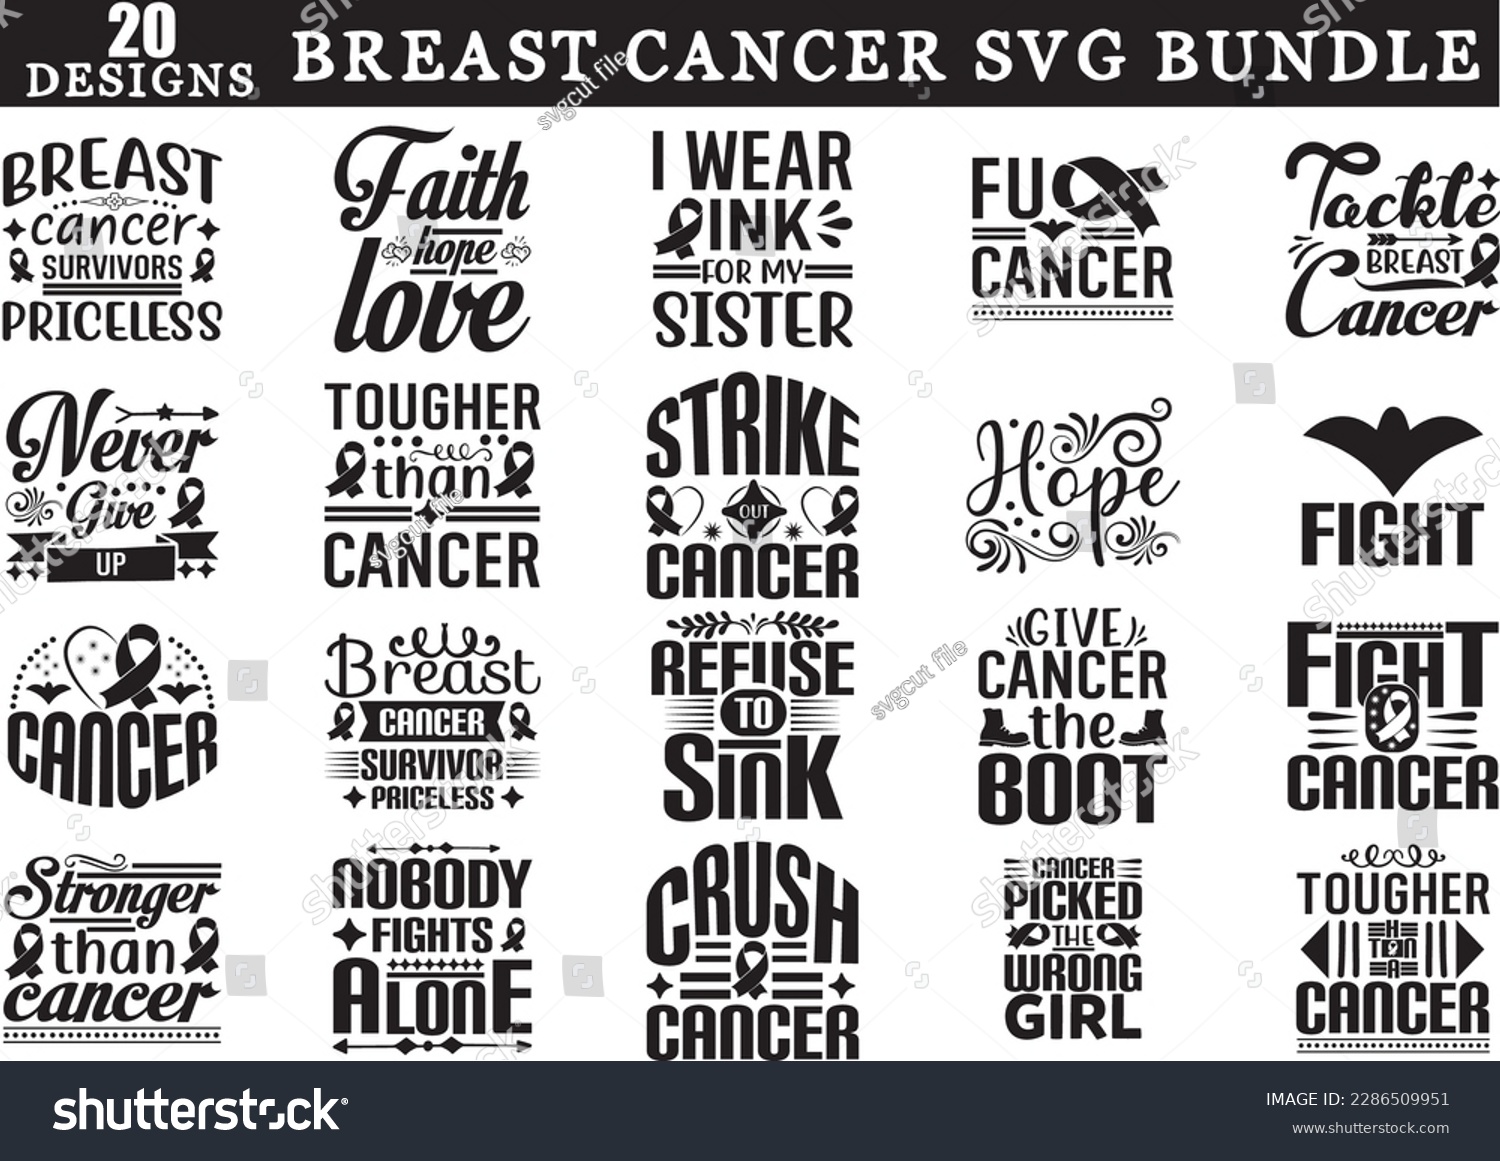 SVG of Breast Cancer SVG Bundle, Breast Cancer SVG design, Breast Cancer SVG svg